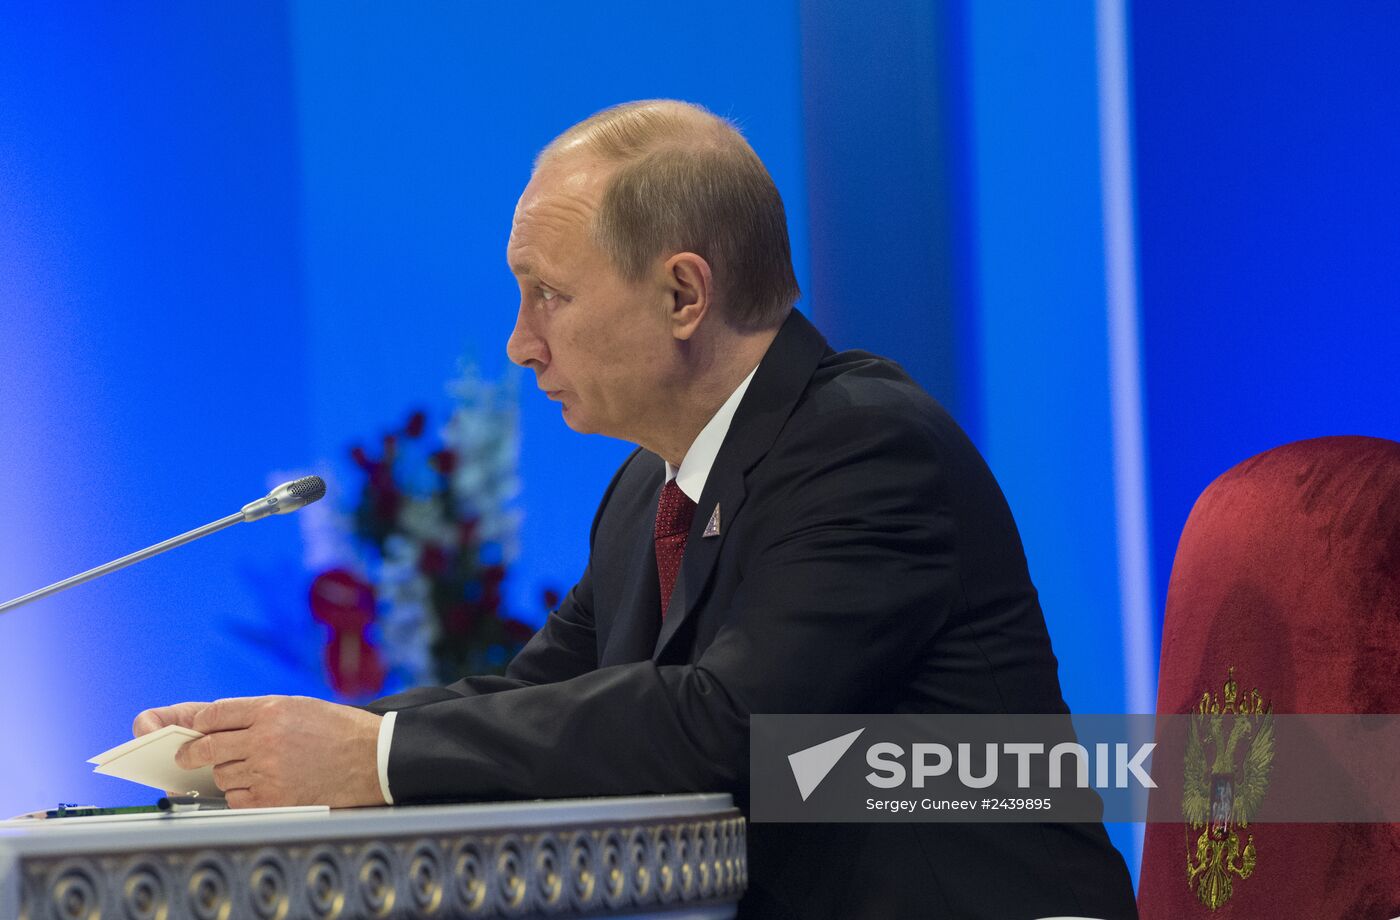 Putin visits Astana to take part in Supreme Eurasian Economic Council meeting